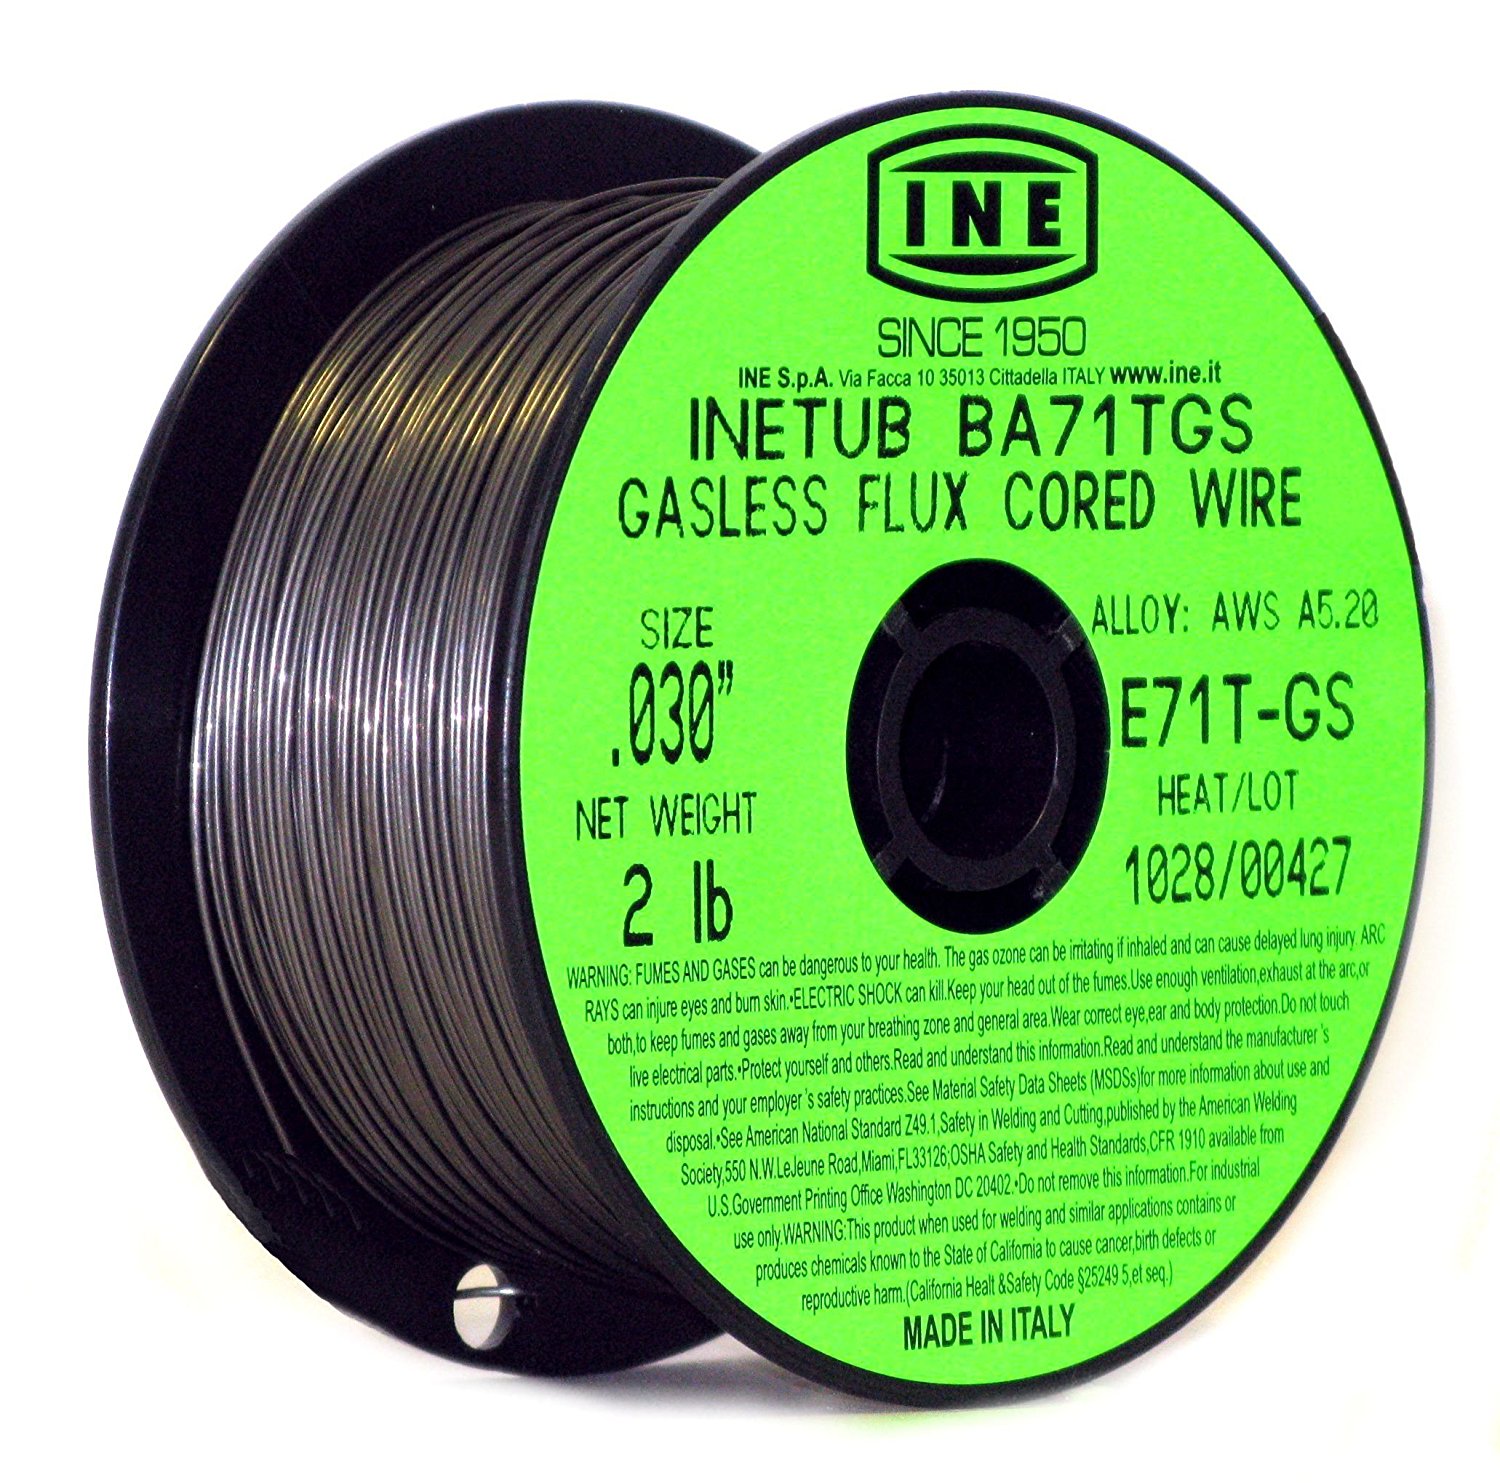 Carbon Steel Gasless Flux Cored Welding Wire